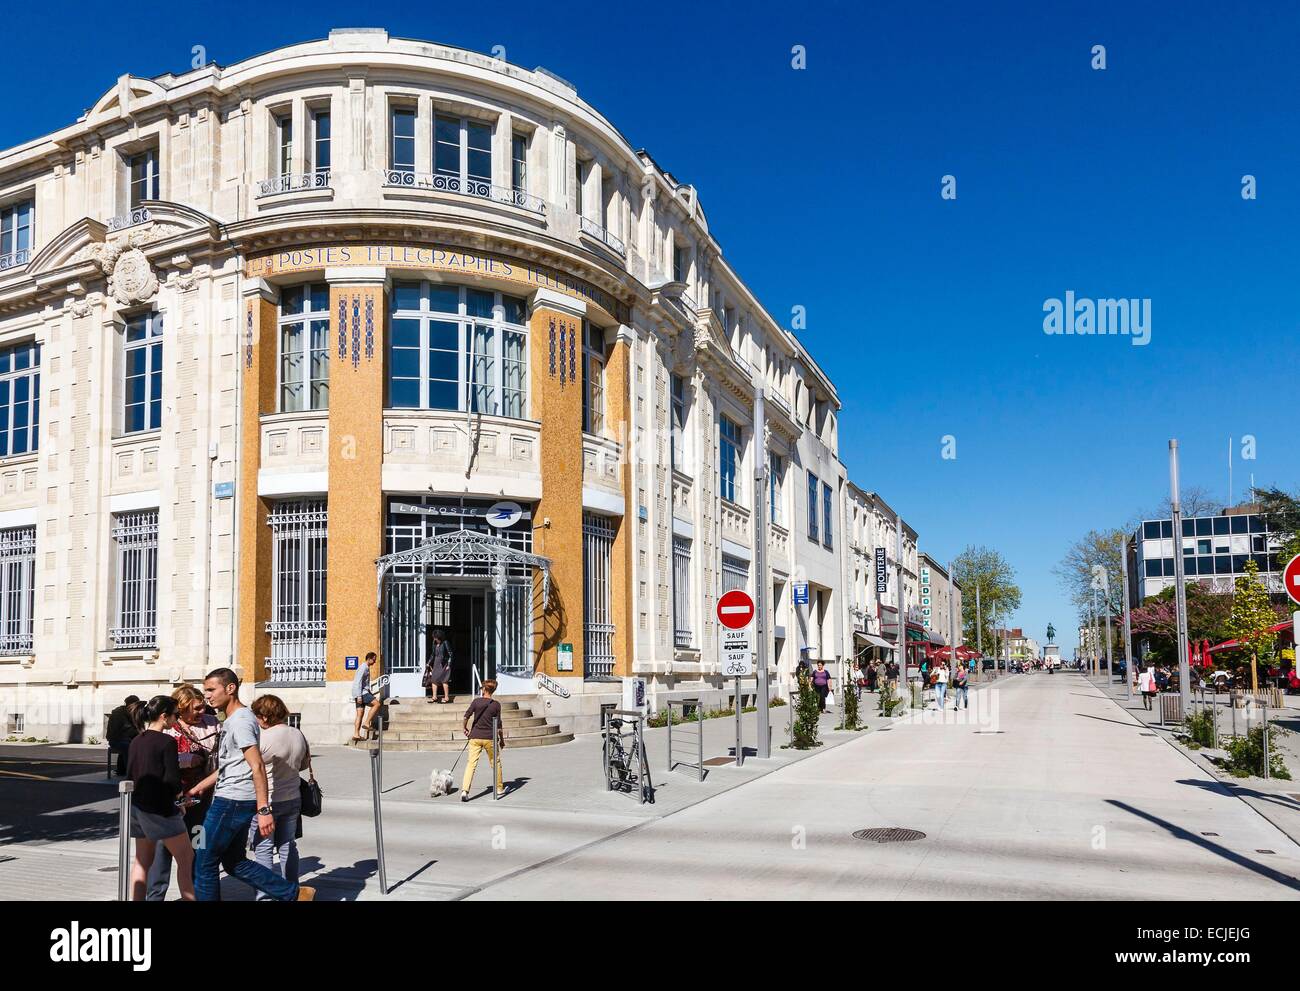 France, Vendee, La Roche sur Yon, post office building Stock Photo